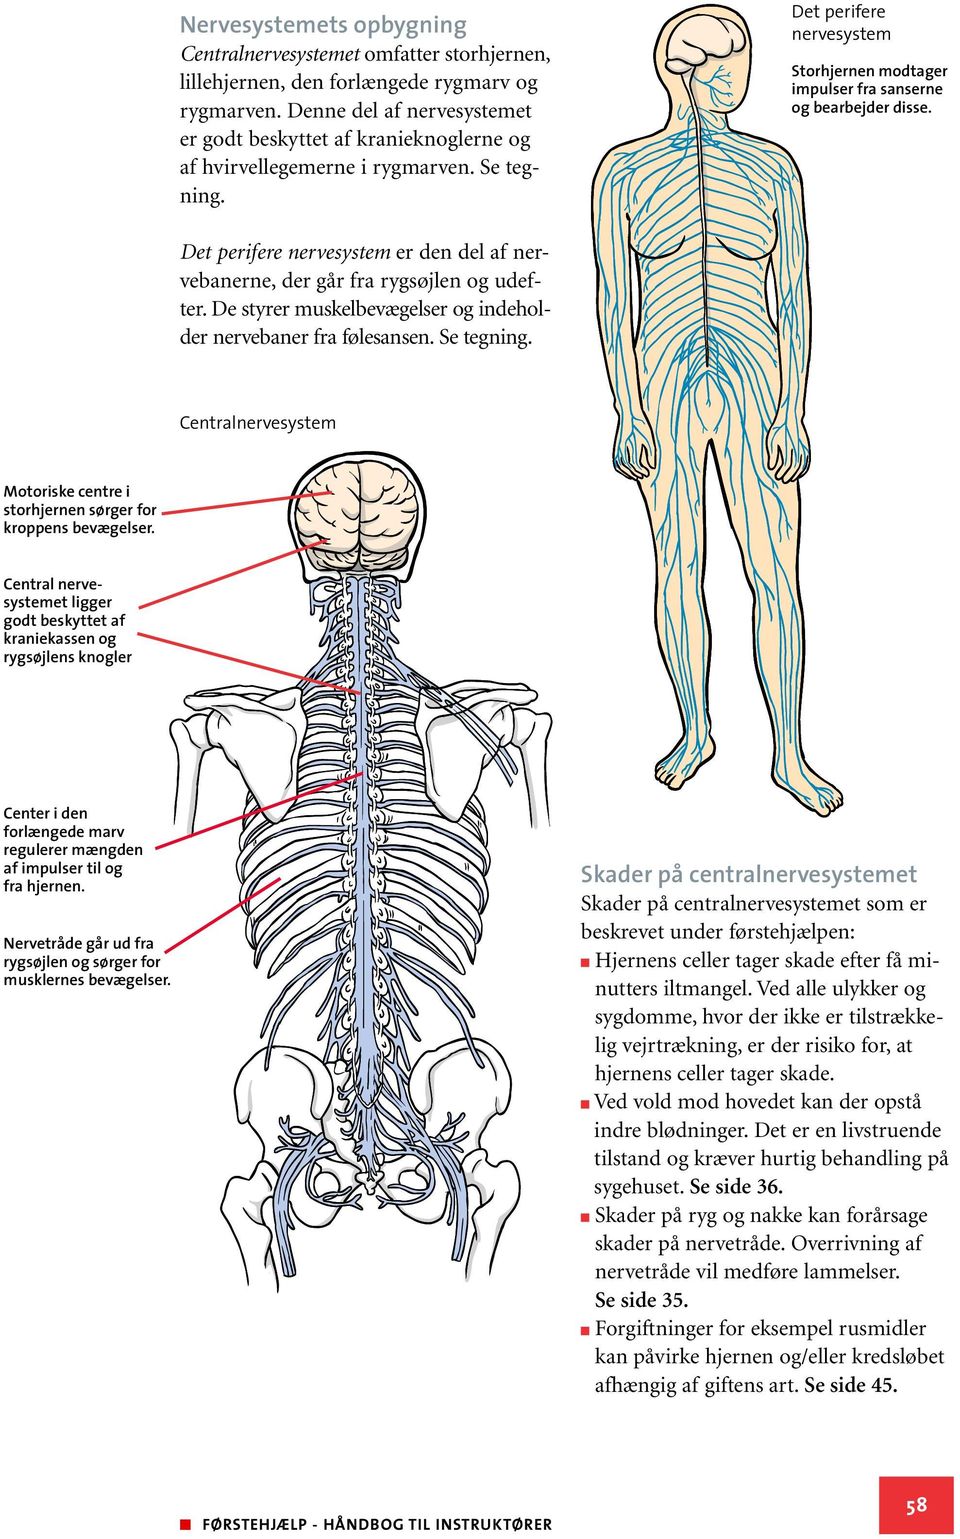 Det perifere nervesystem er den del af nervebanerne, der går fra rygsøjlen og udefter. De styrer muskelbevægelser og indeholder nervebaner fra følesansen. Se tegning.